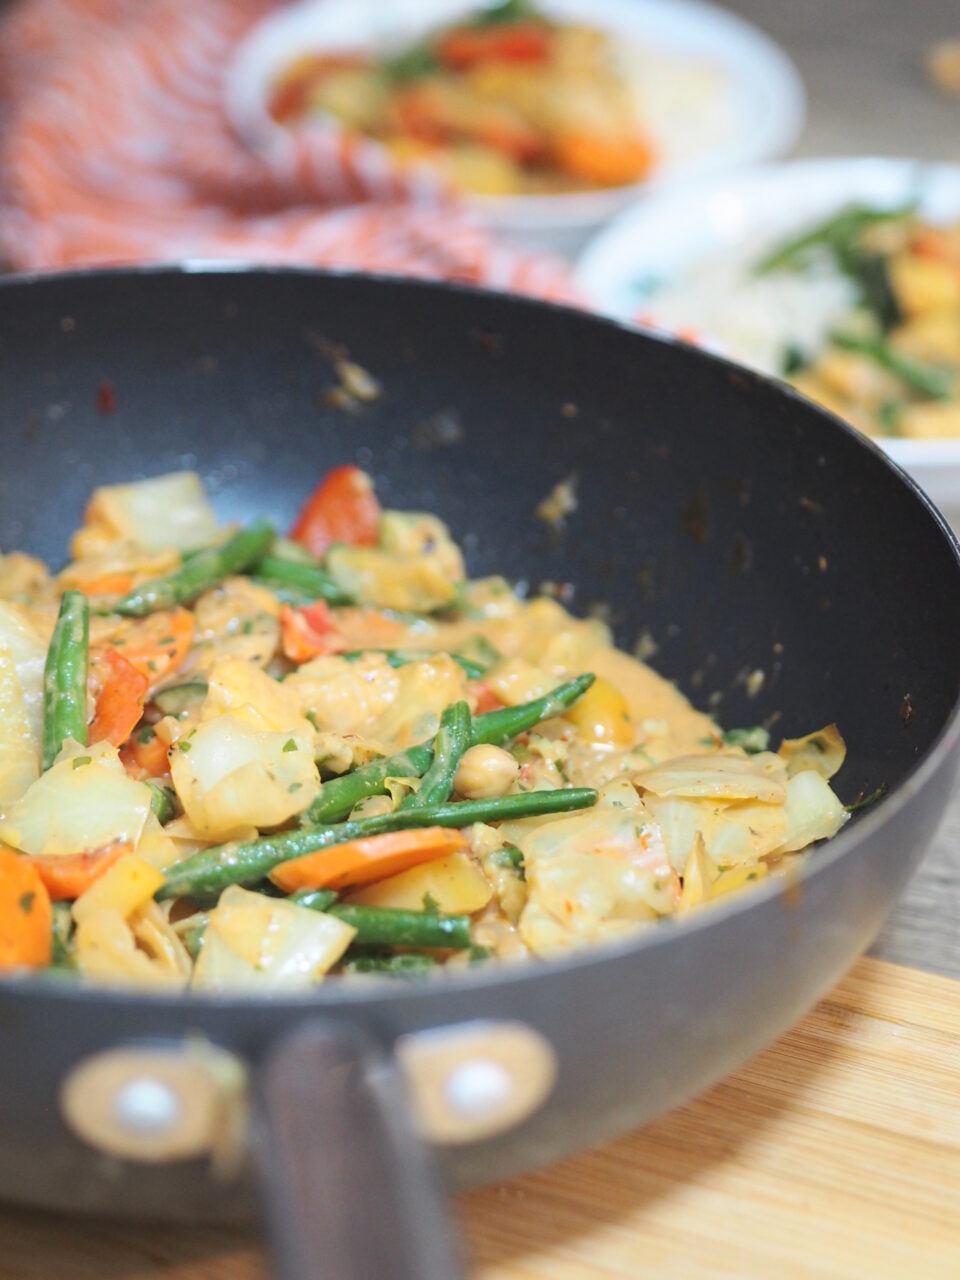 Gemüse-Curry mit Kokosmilch und Kichererbsen